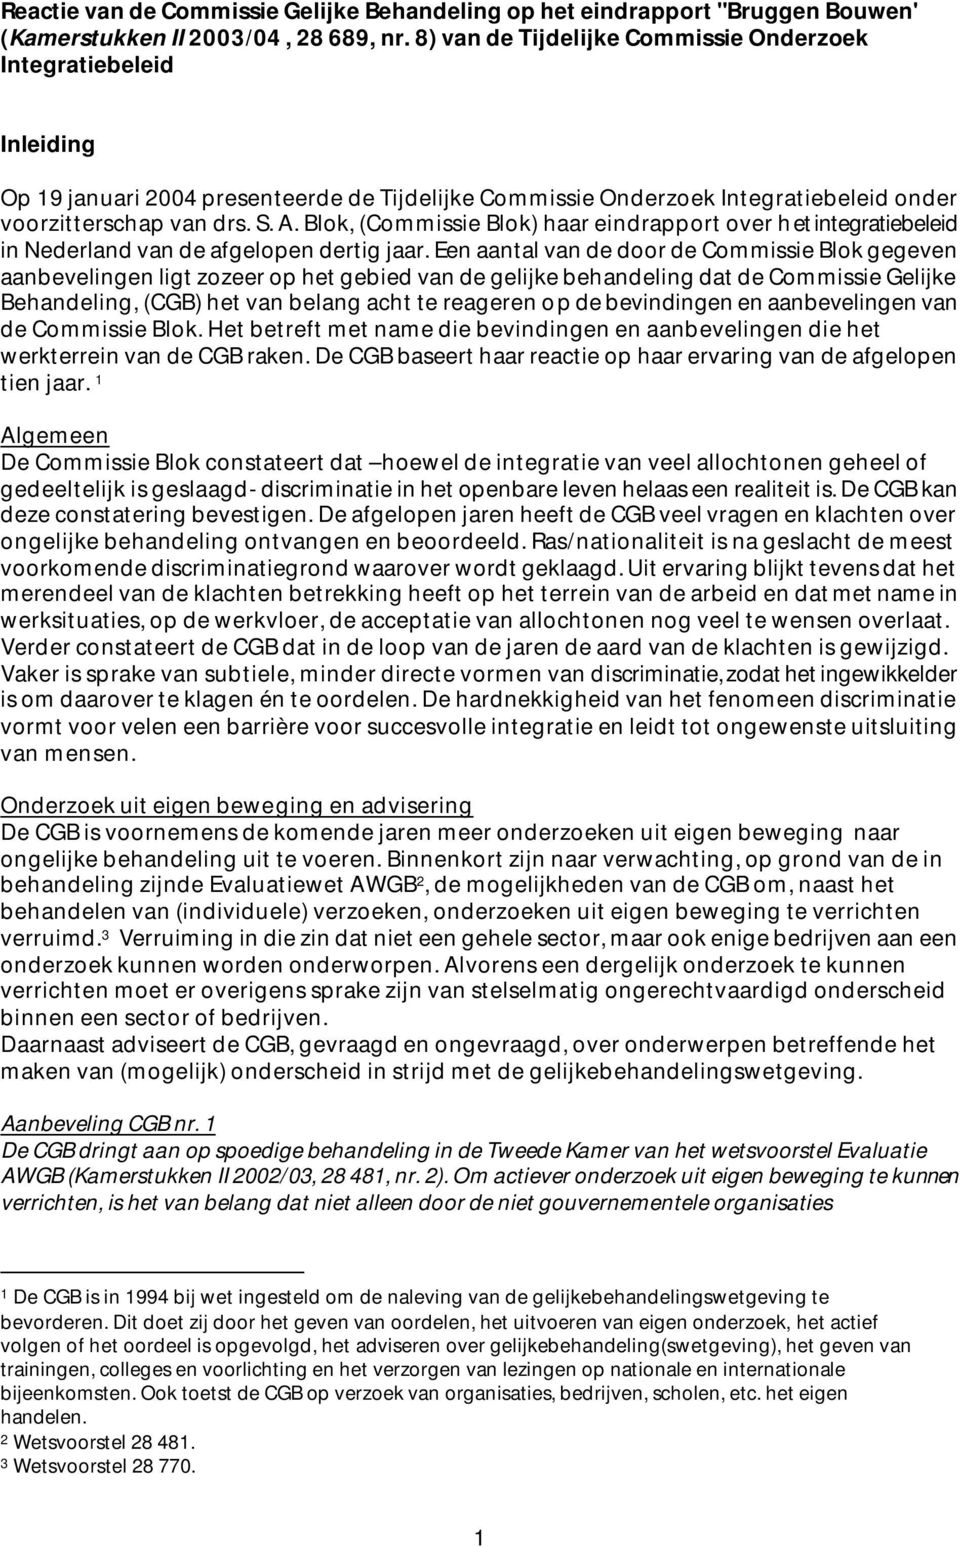 Blok, (Commissie Blok) haar eindrapport over het integratiebeleid in Nederland van de afgelopen dertig jaar.